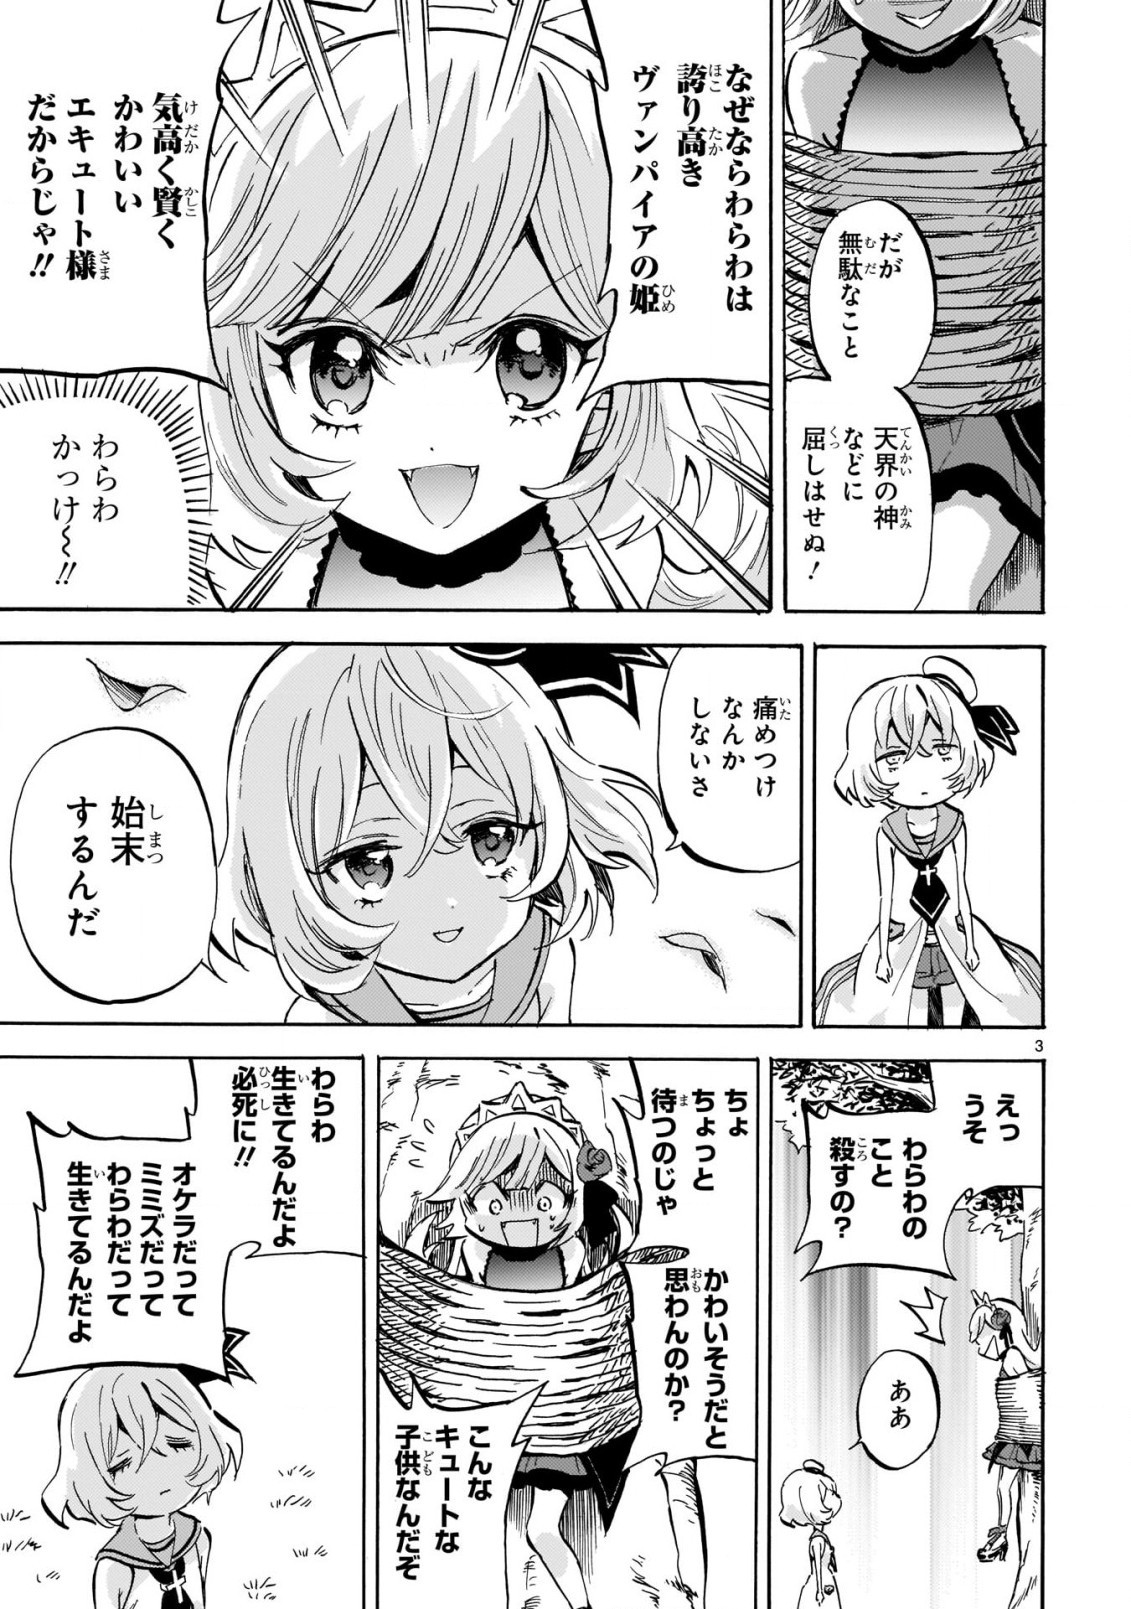 Jashin-chan Dropkick - Chapter 199 - Page 3